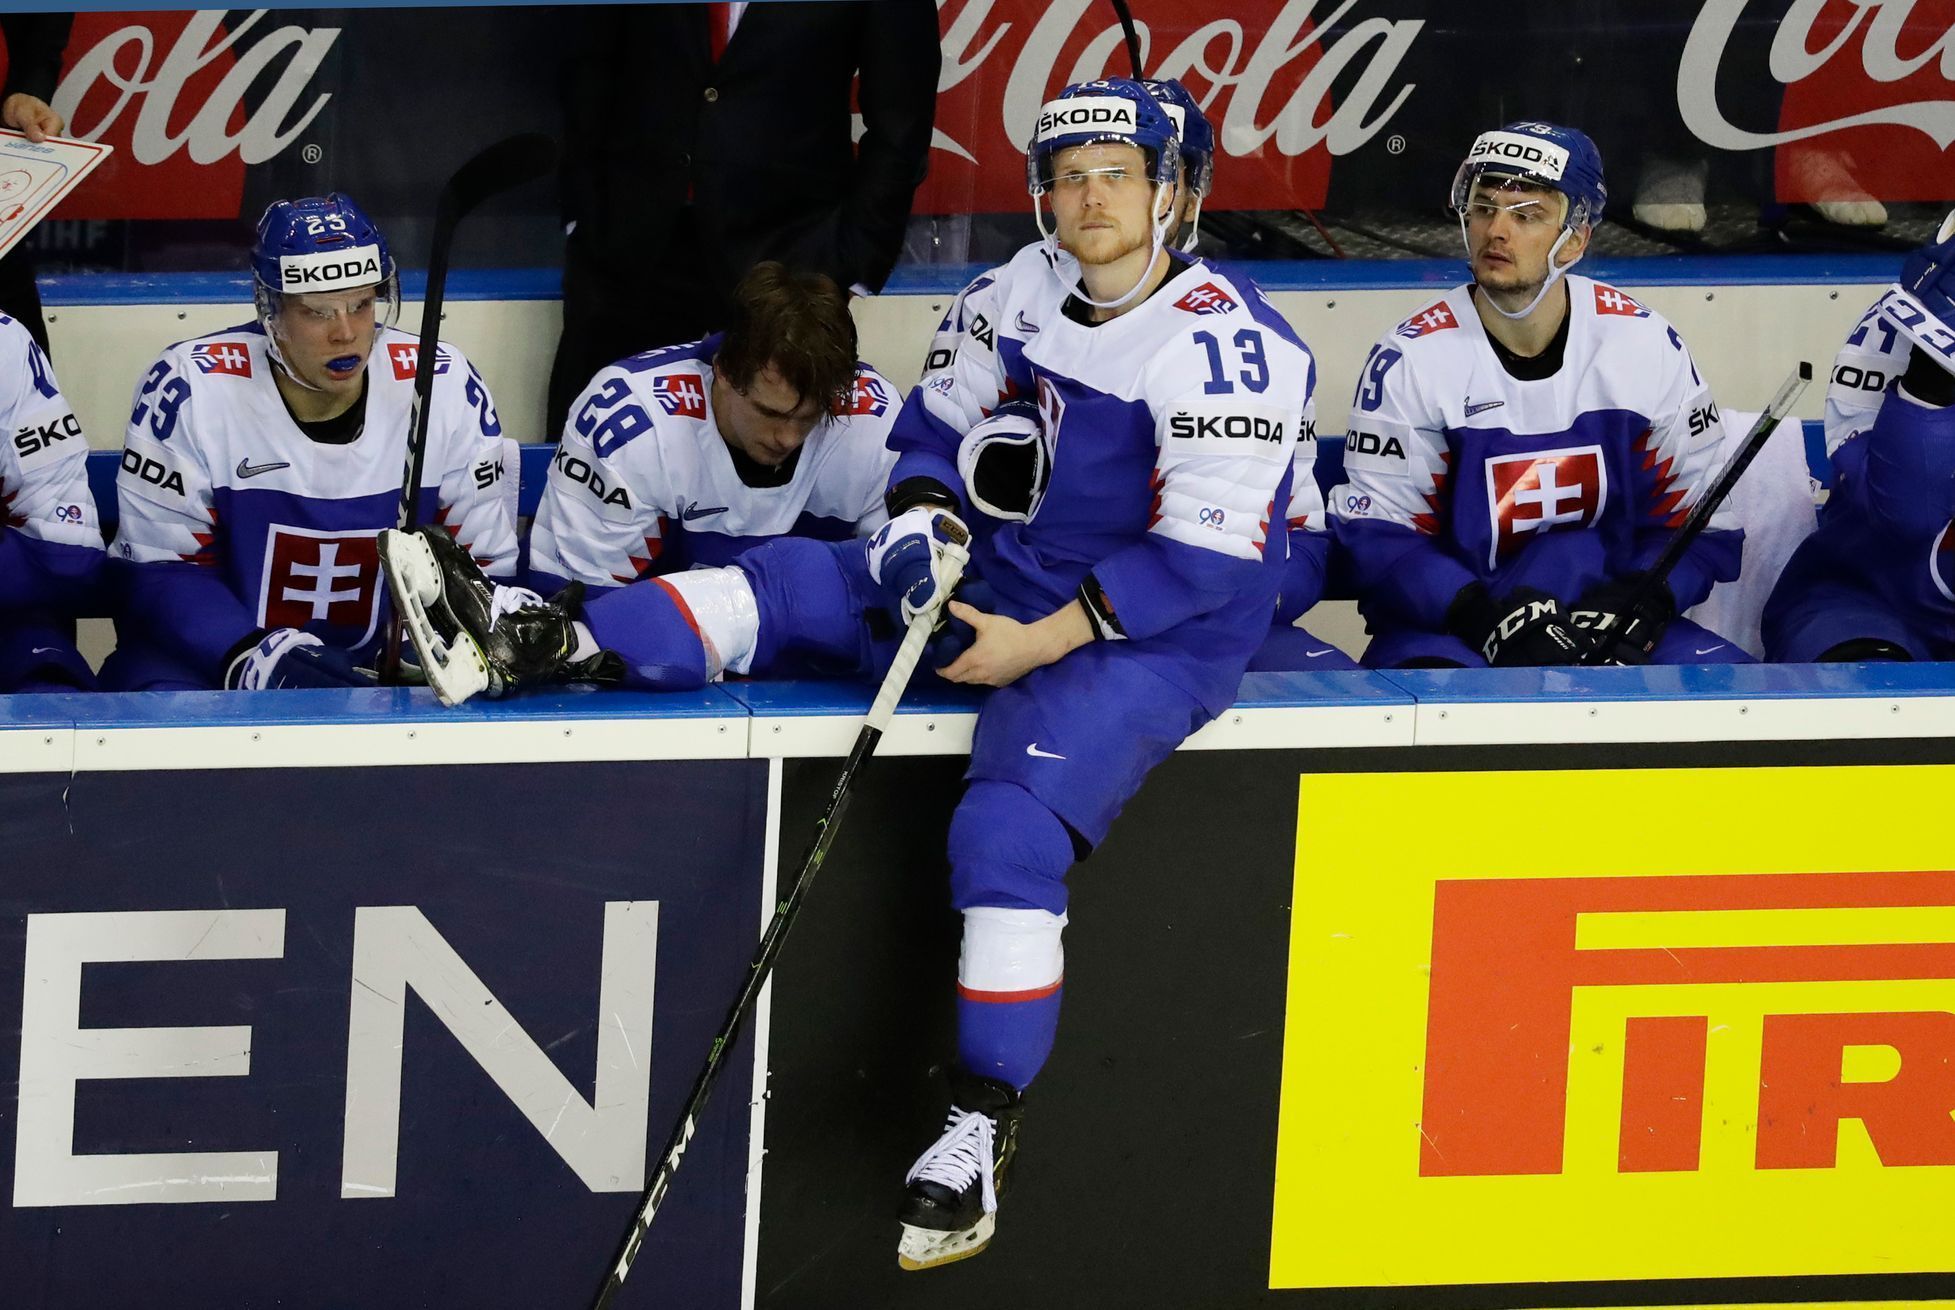 Smutní slovenští hokejisté po prohře s Německem na MS 2019